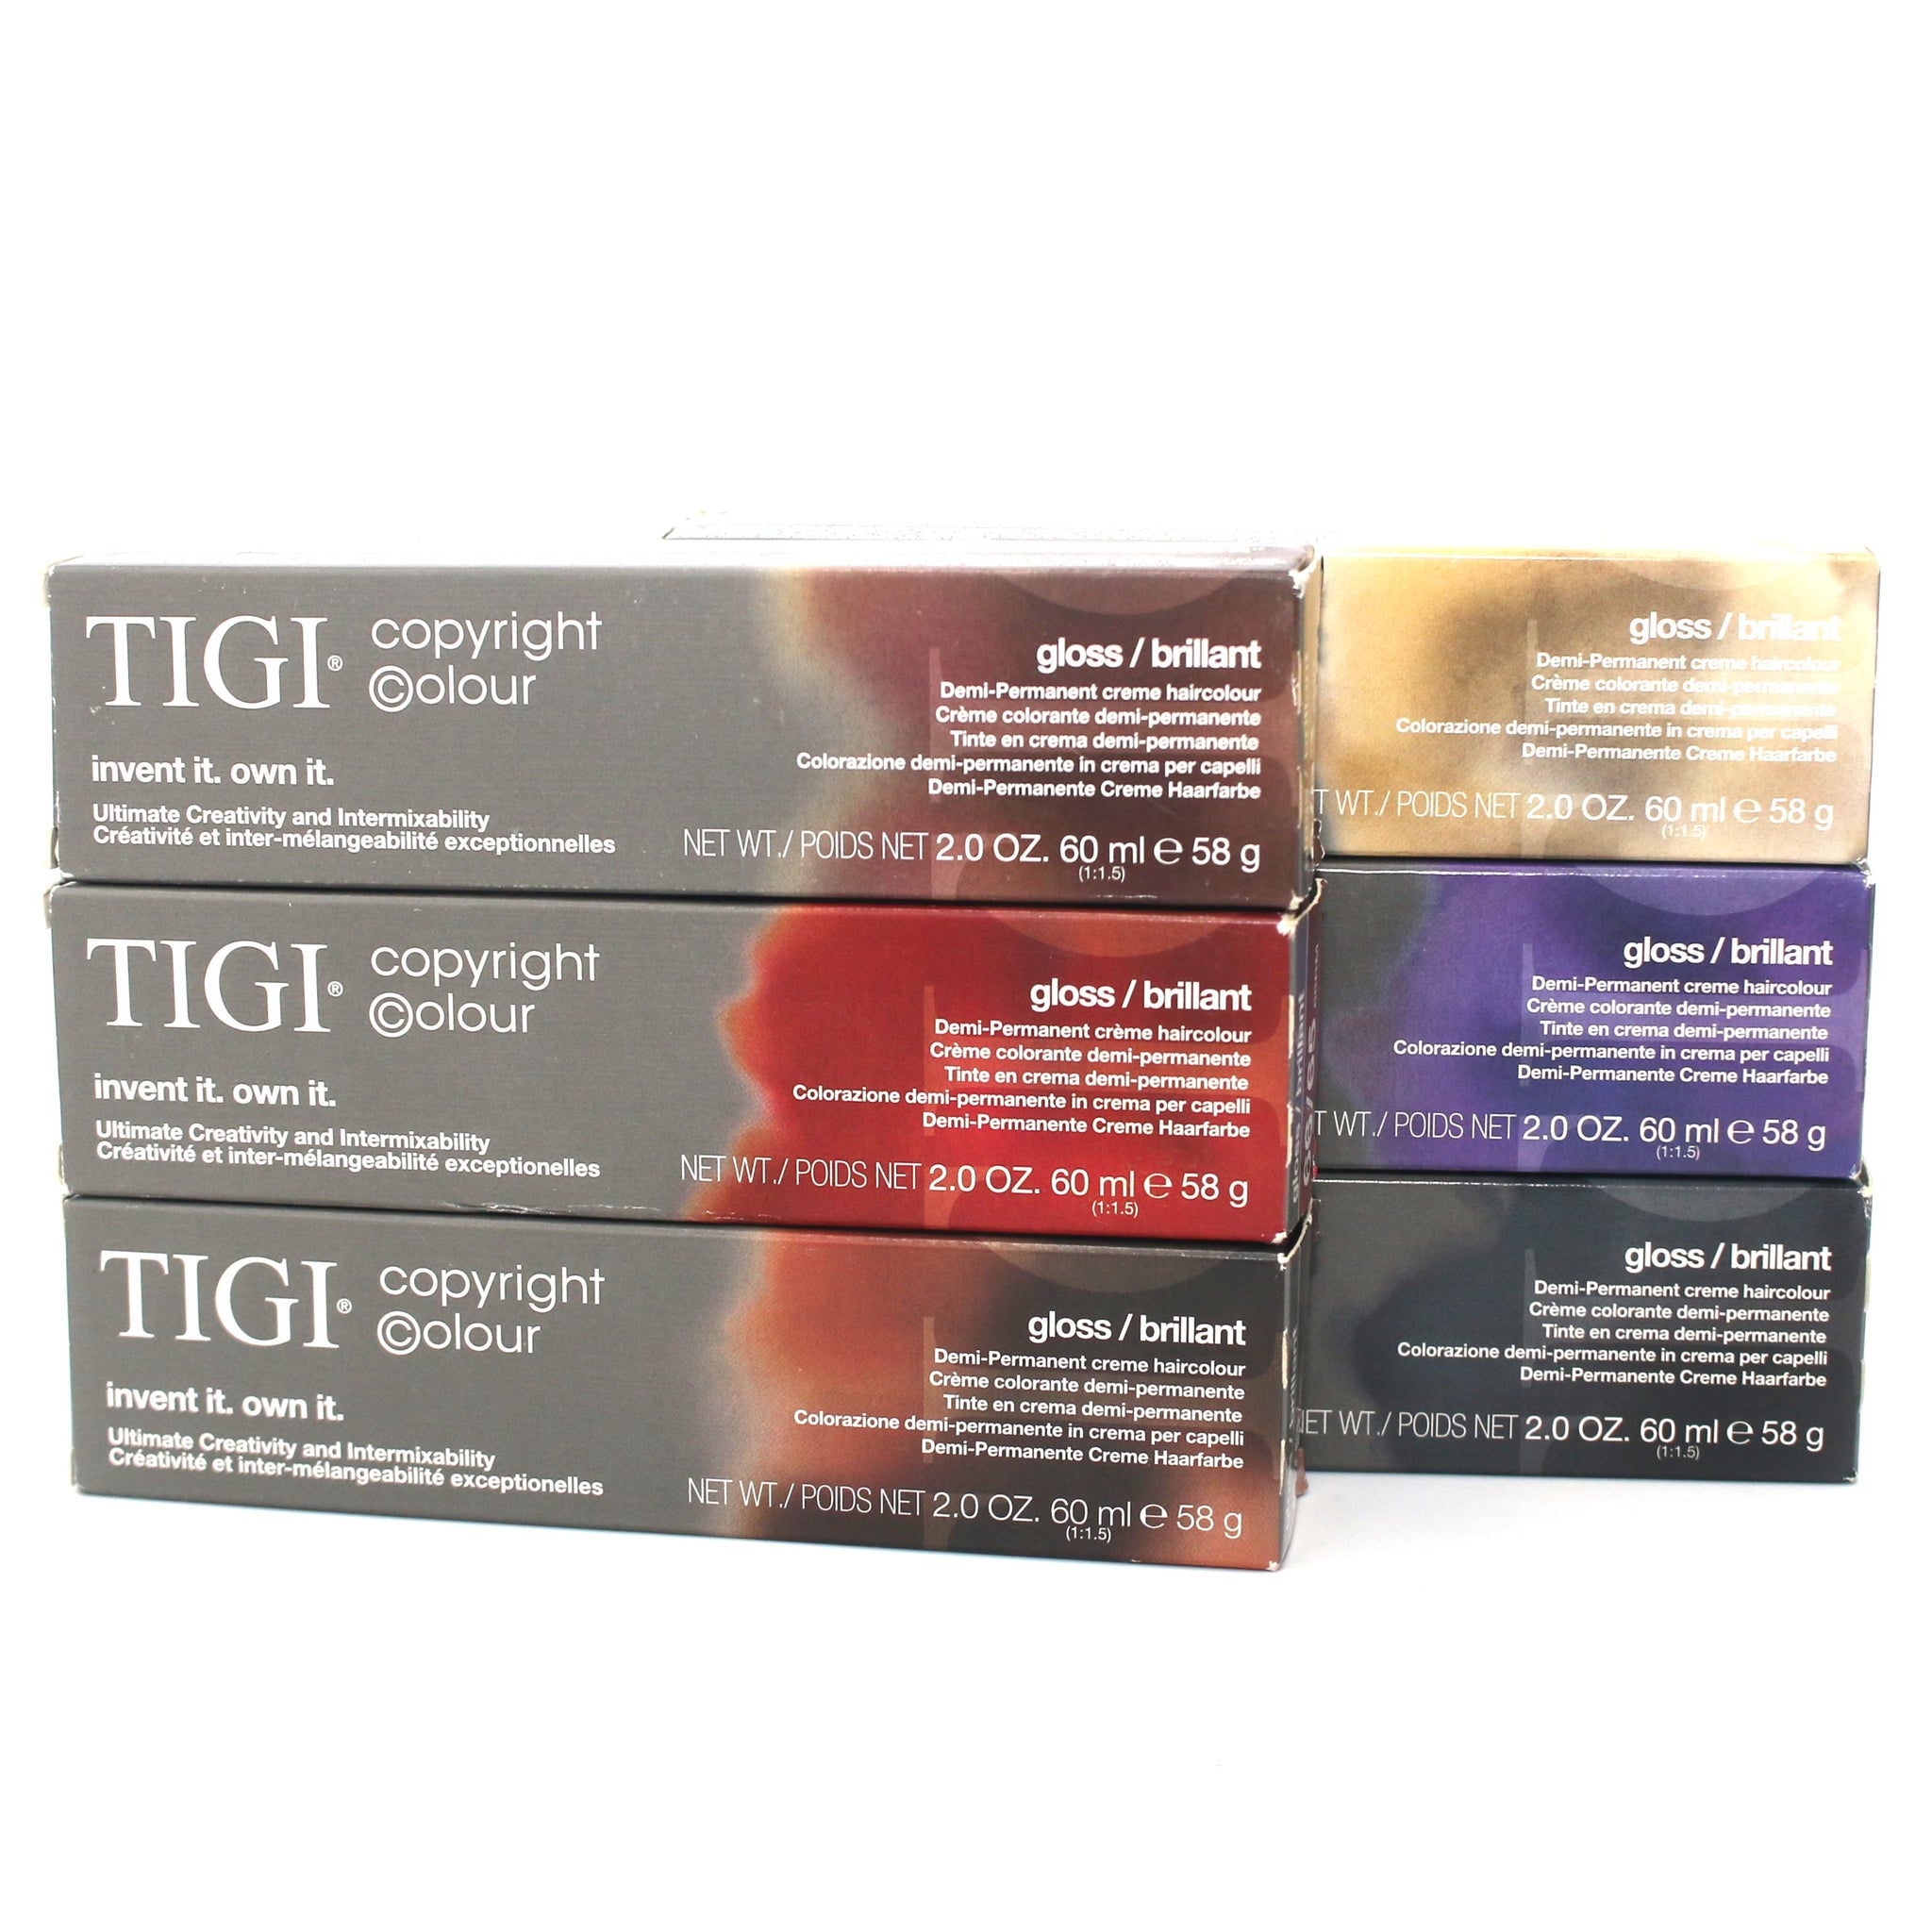 Tigi Copyright Colour Gloss/Brillant Demi Permanent Creme Haircolor 2 oz